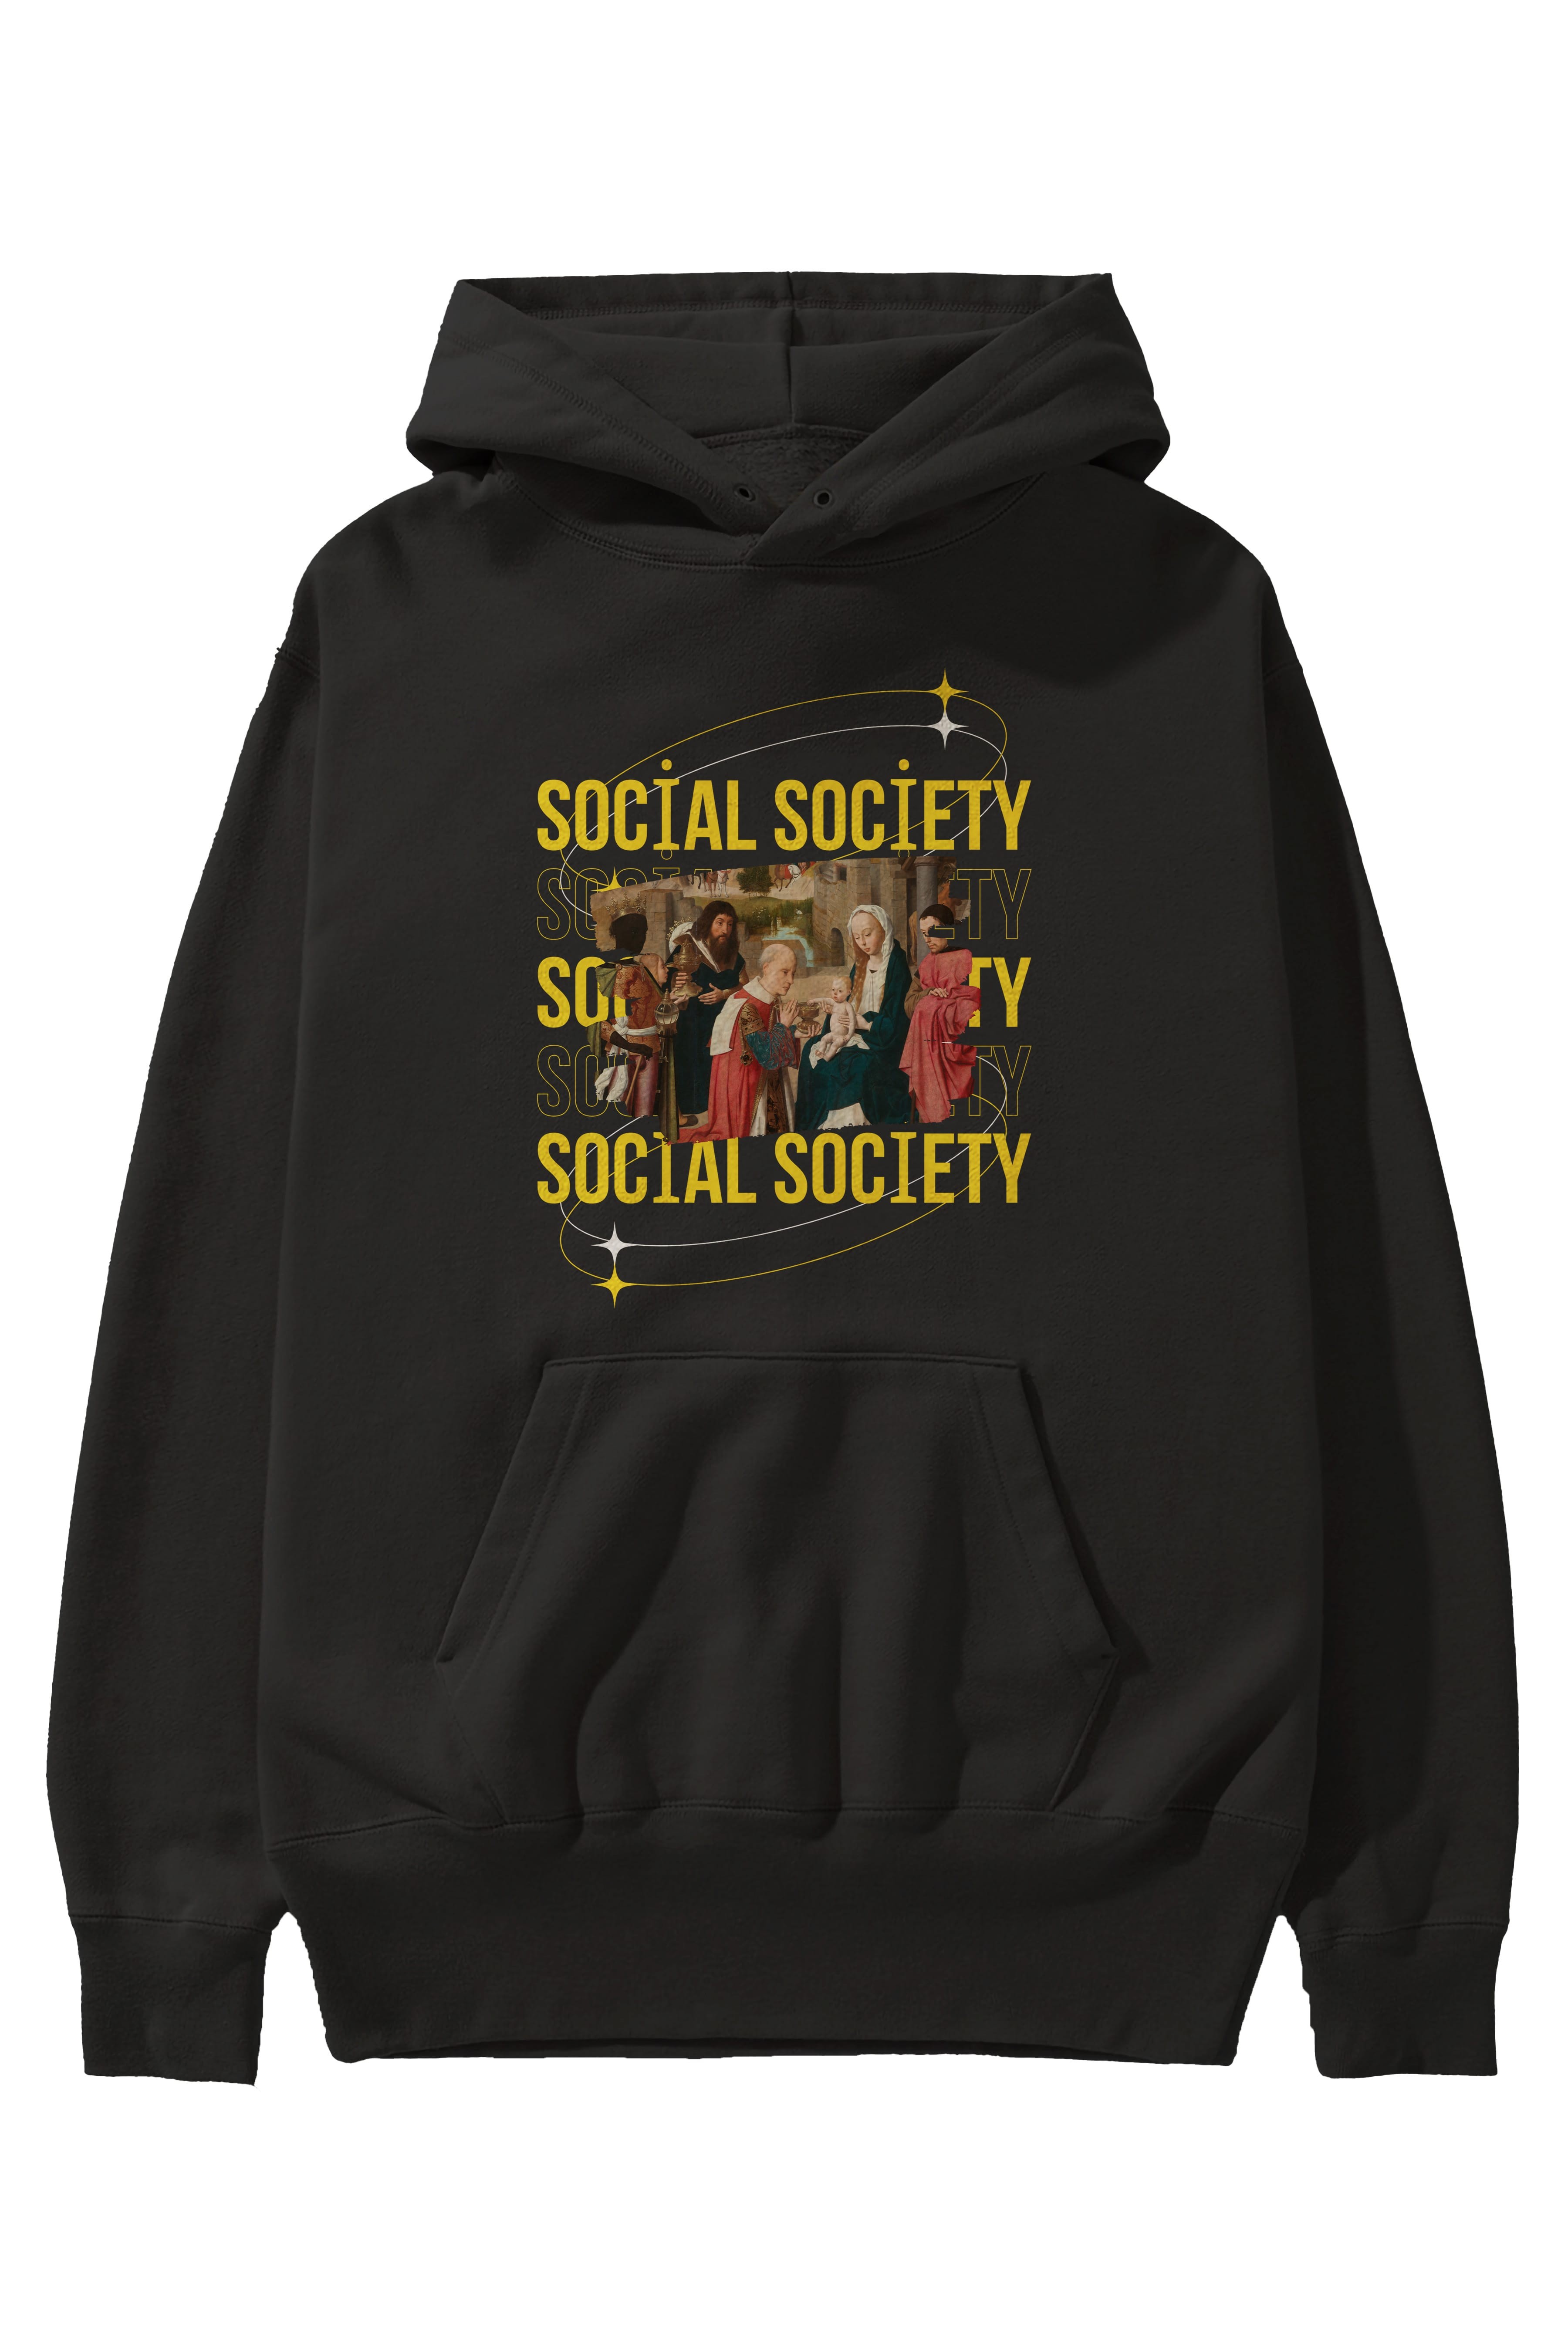 Social Society Yazılı Ön Baskılı Oversize Hoodie Kapüşonlu Sweatshirt Erkek Kadın Unisex